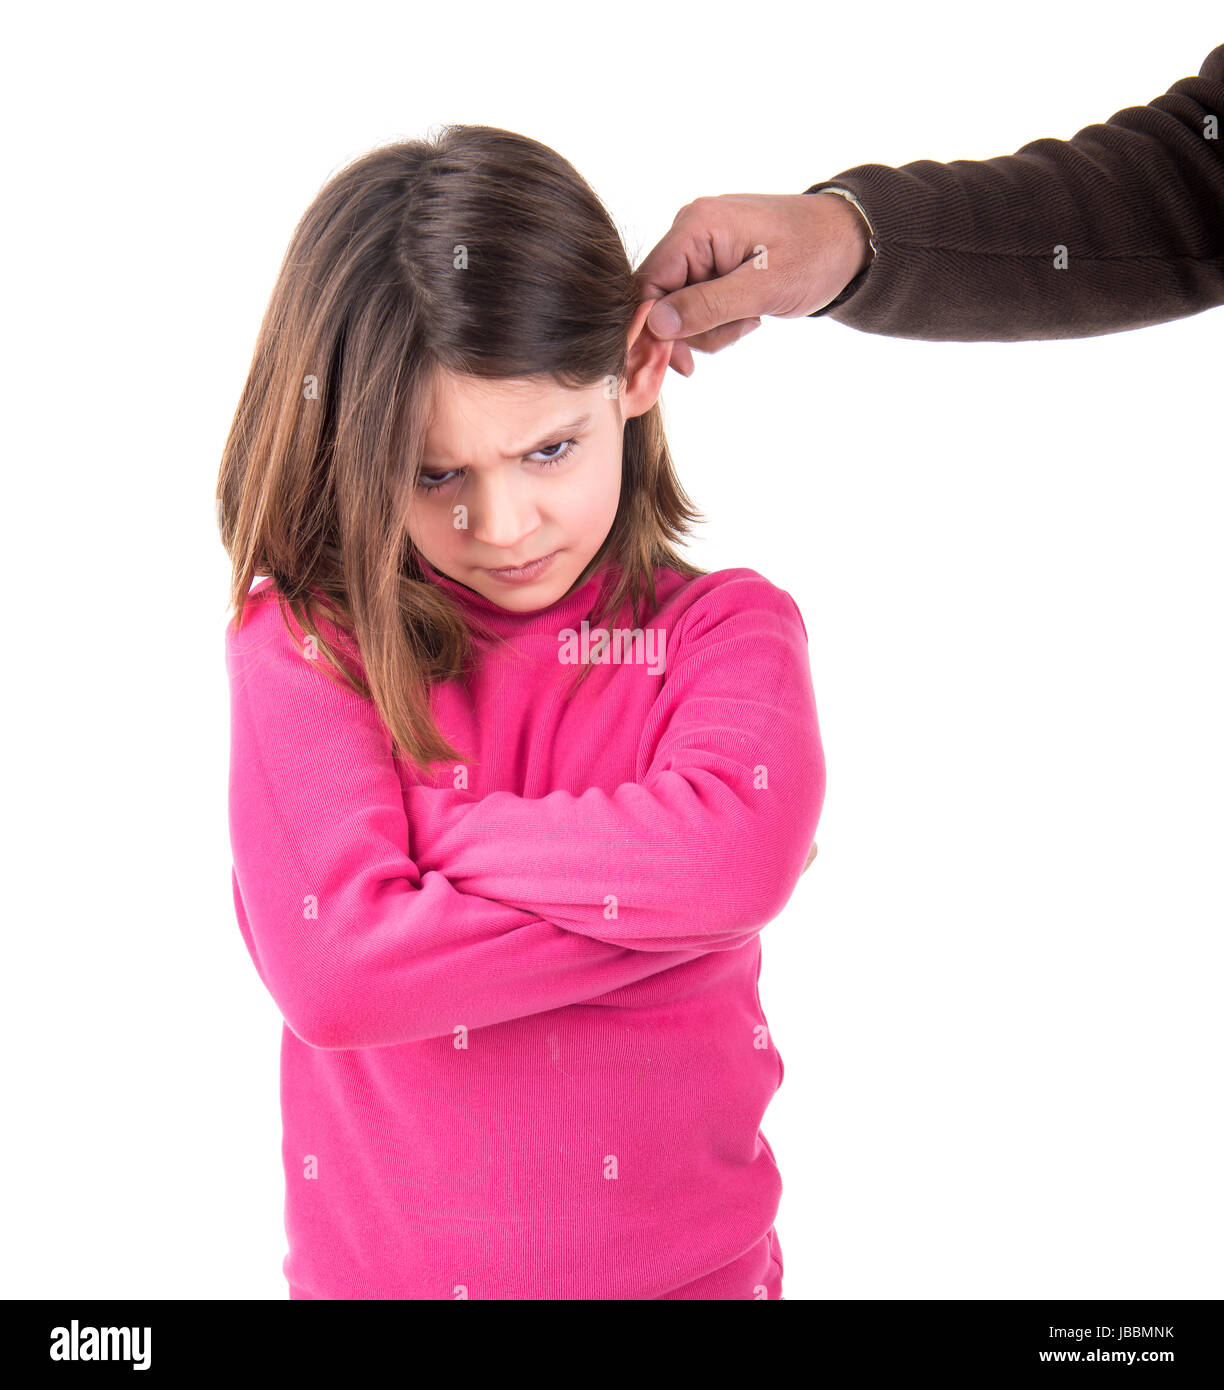 Строго наказывать дочь